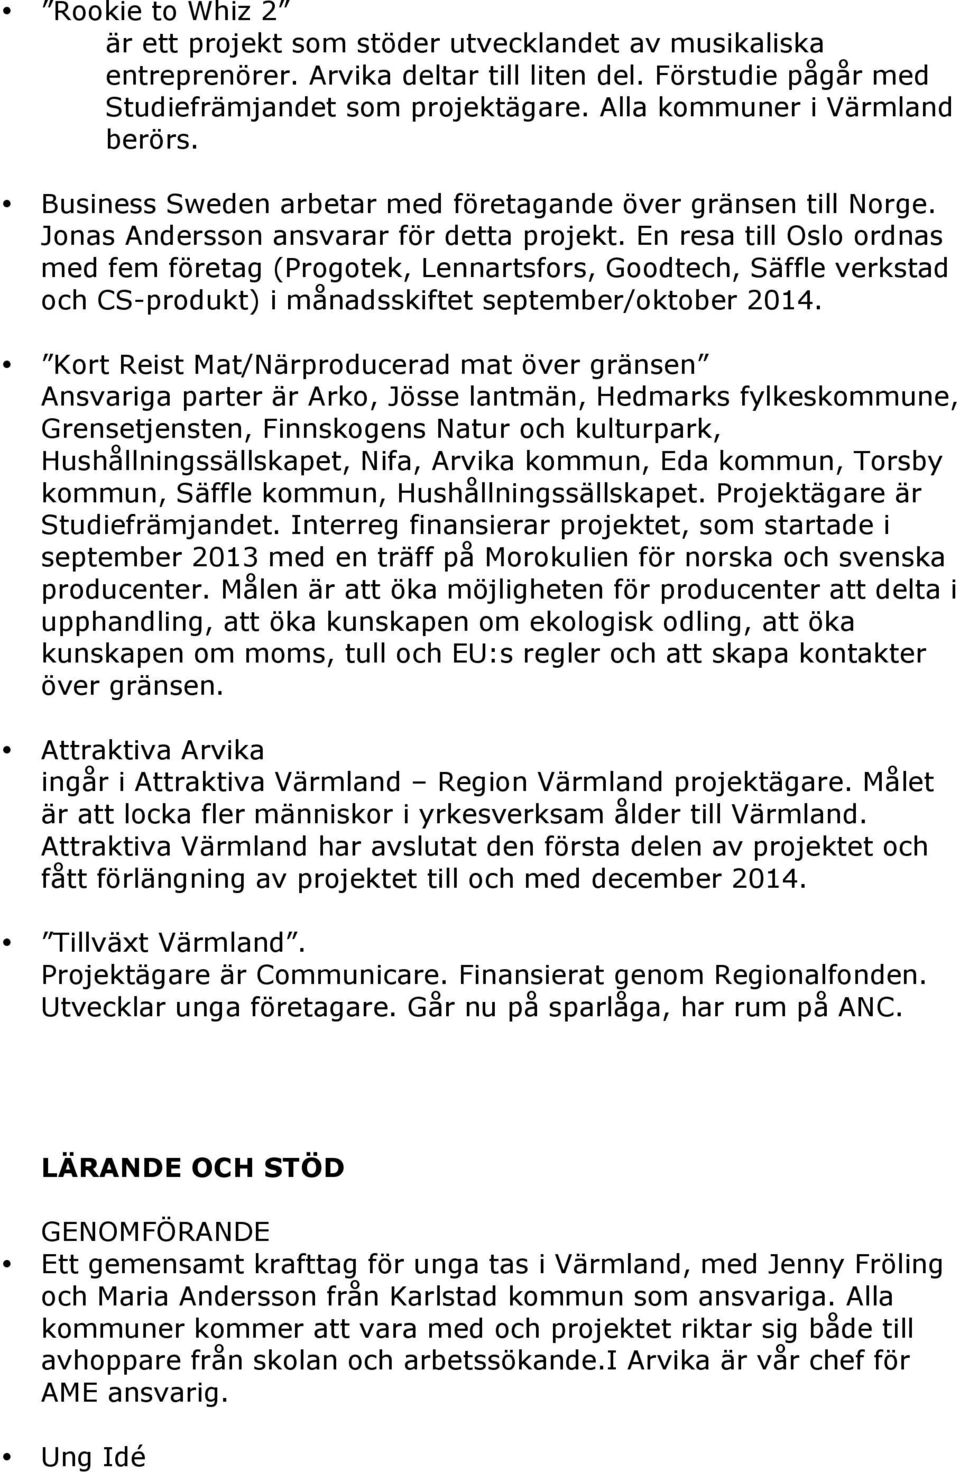 En resa till Oslo ordnas med fem företag (Progotek, Lennartsfors, Goodtech, Säffle verkstad och CS-produkt) i månadsskiftet september/oktober 2014.